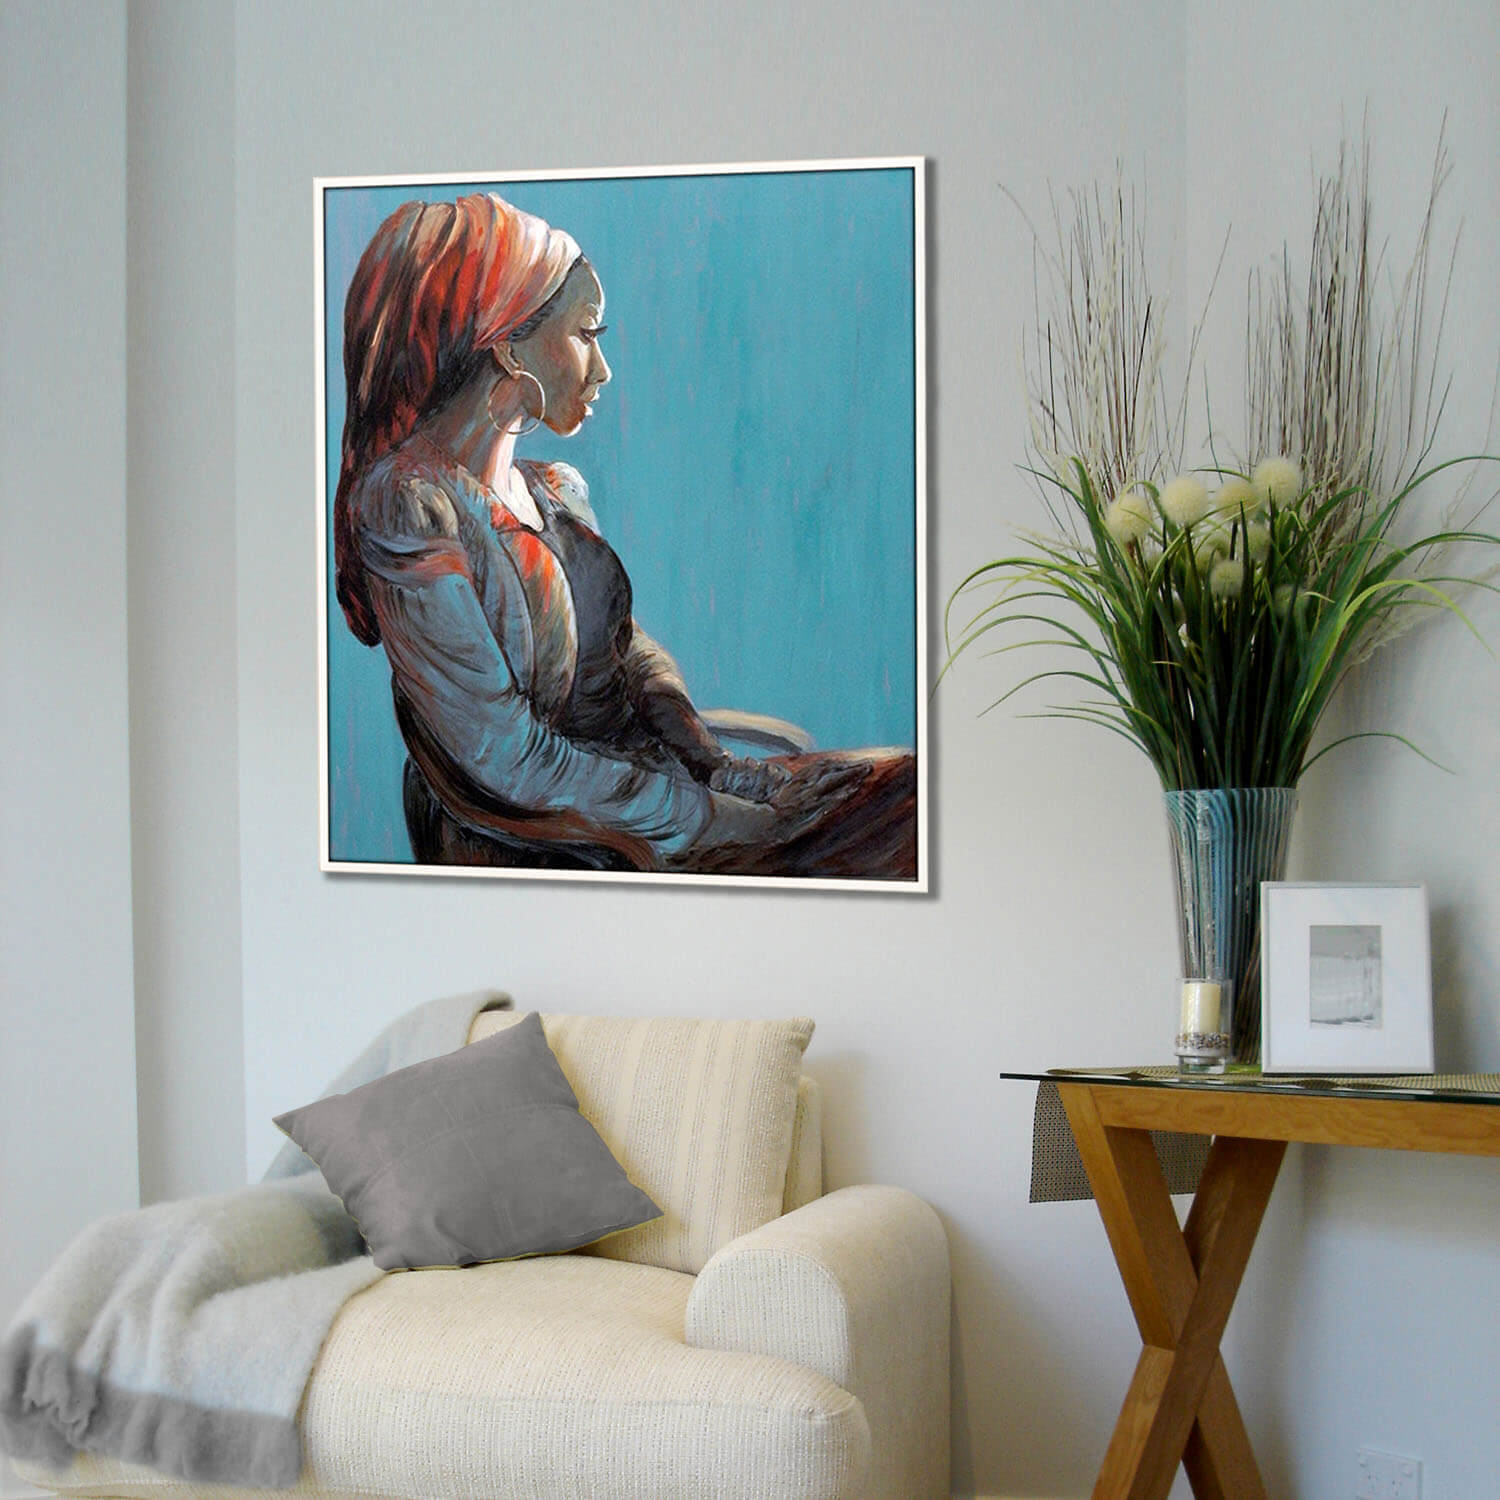 ציור אישה עם כיסוי ראש אדום יושבת על רקע כחול תמונה רגועה מעל הכורסא לבית ציירת מירי לביא